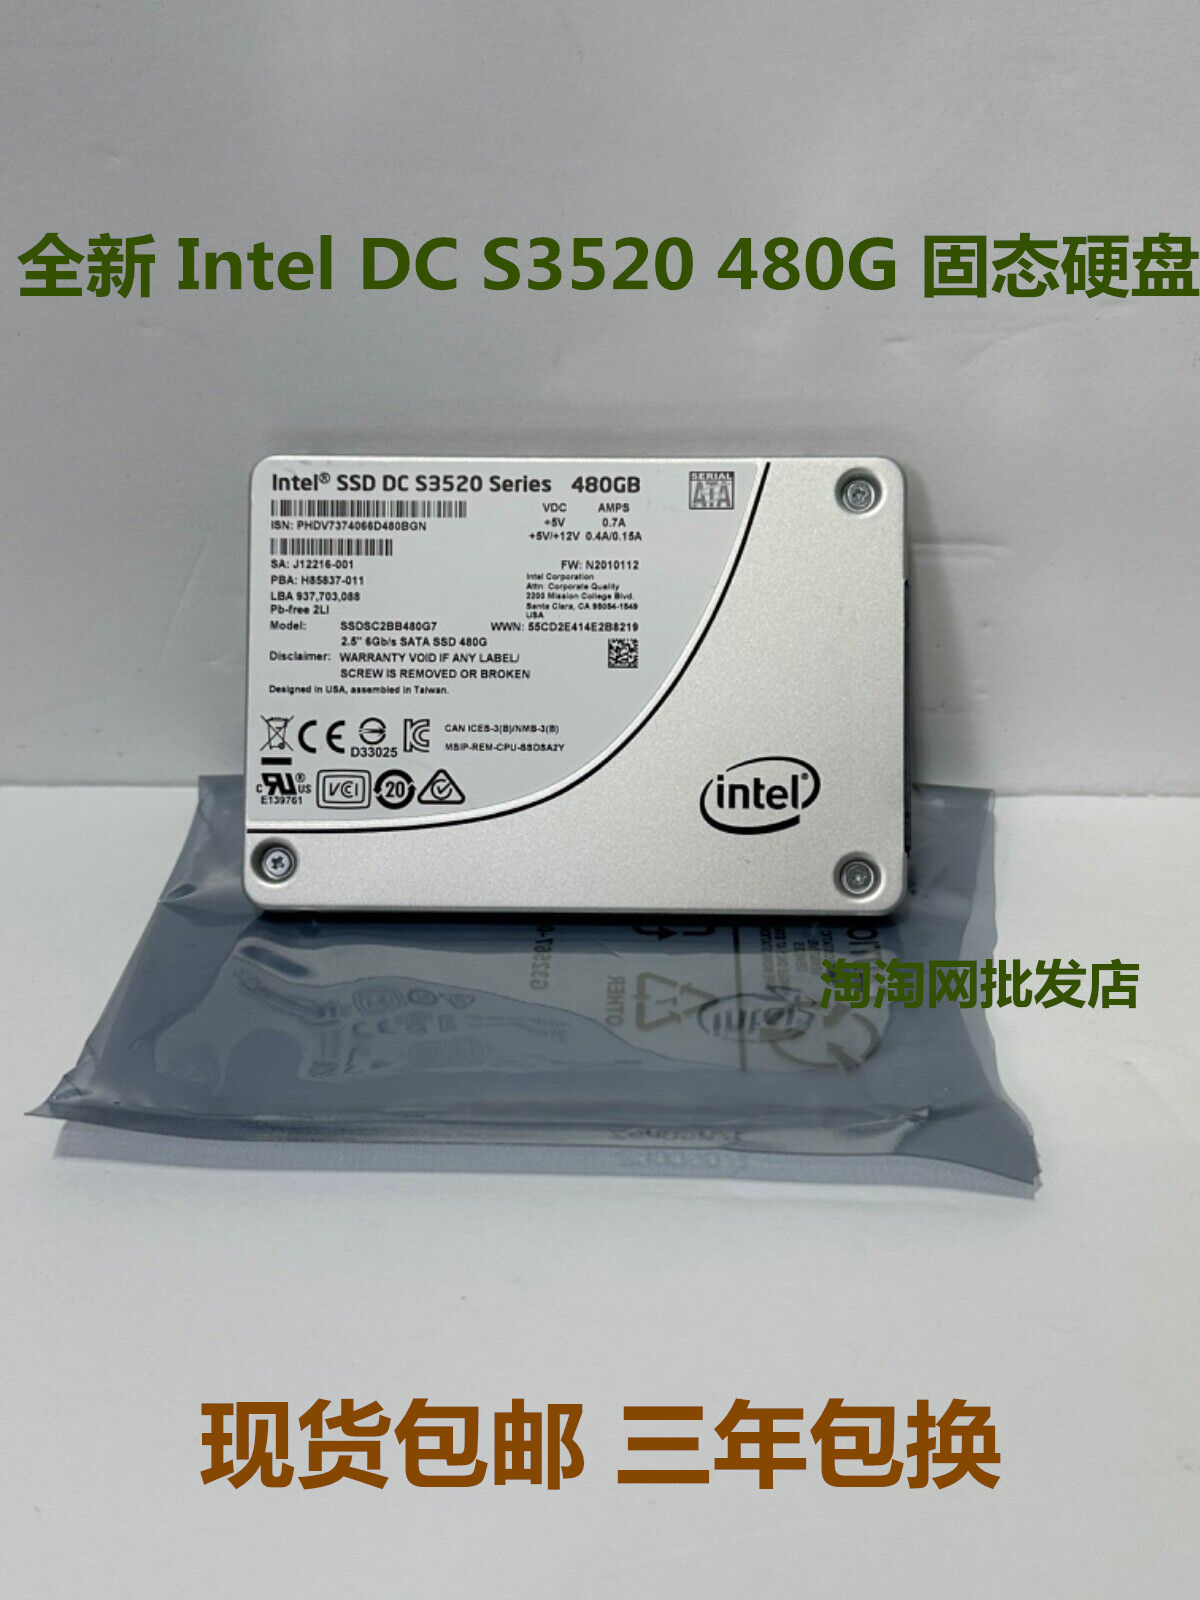 Intel/英特尔DC S3520 480G 2.5 SATA 6Gb SSDSC2BB480G7固态硬盘 电脑硬件/显示器/电脑周边 固态硬盘 原图主图